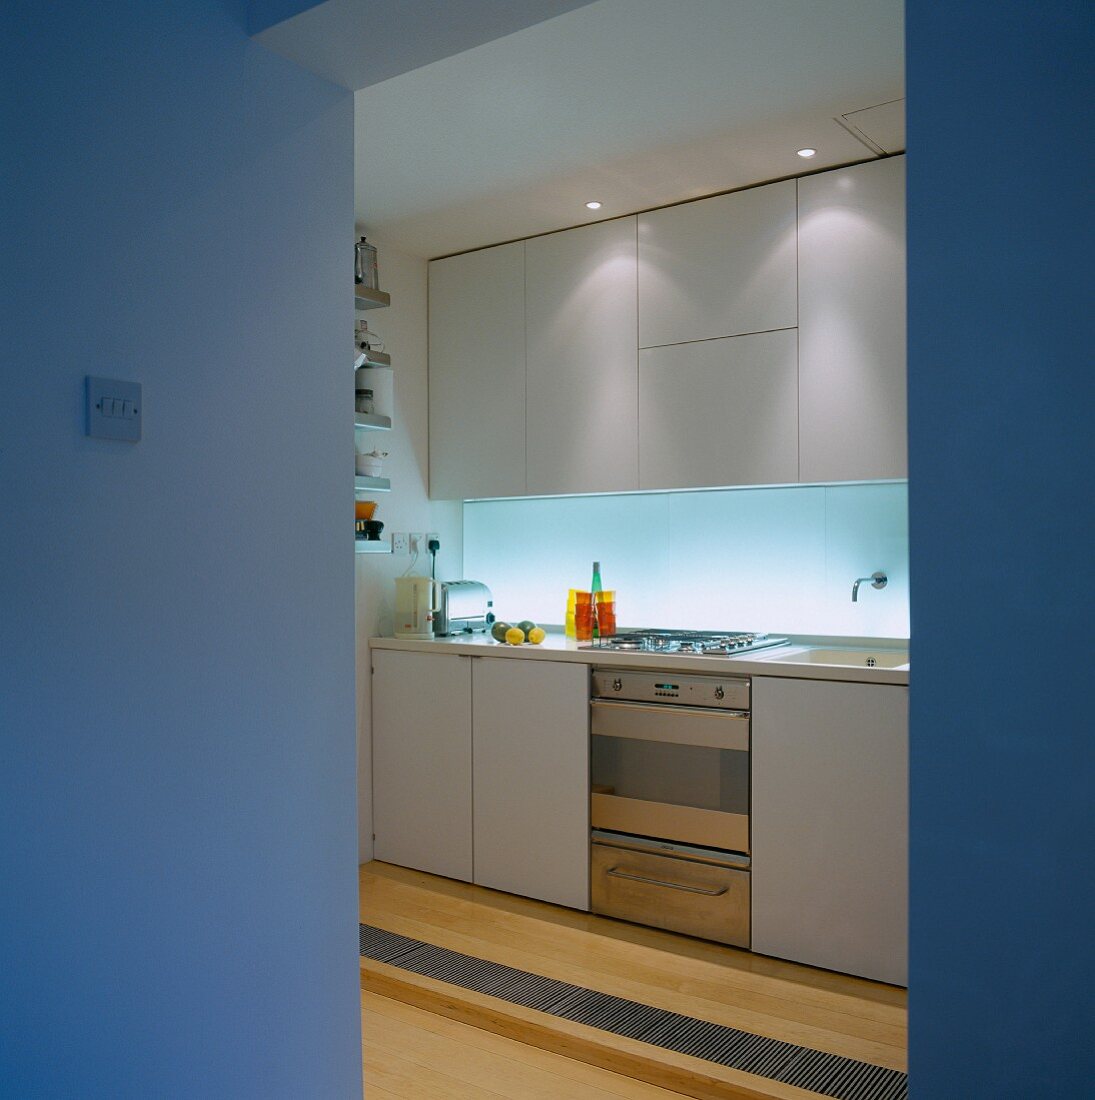 View of functional kitchen through open doorway